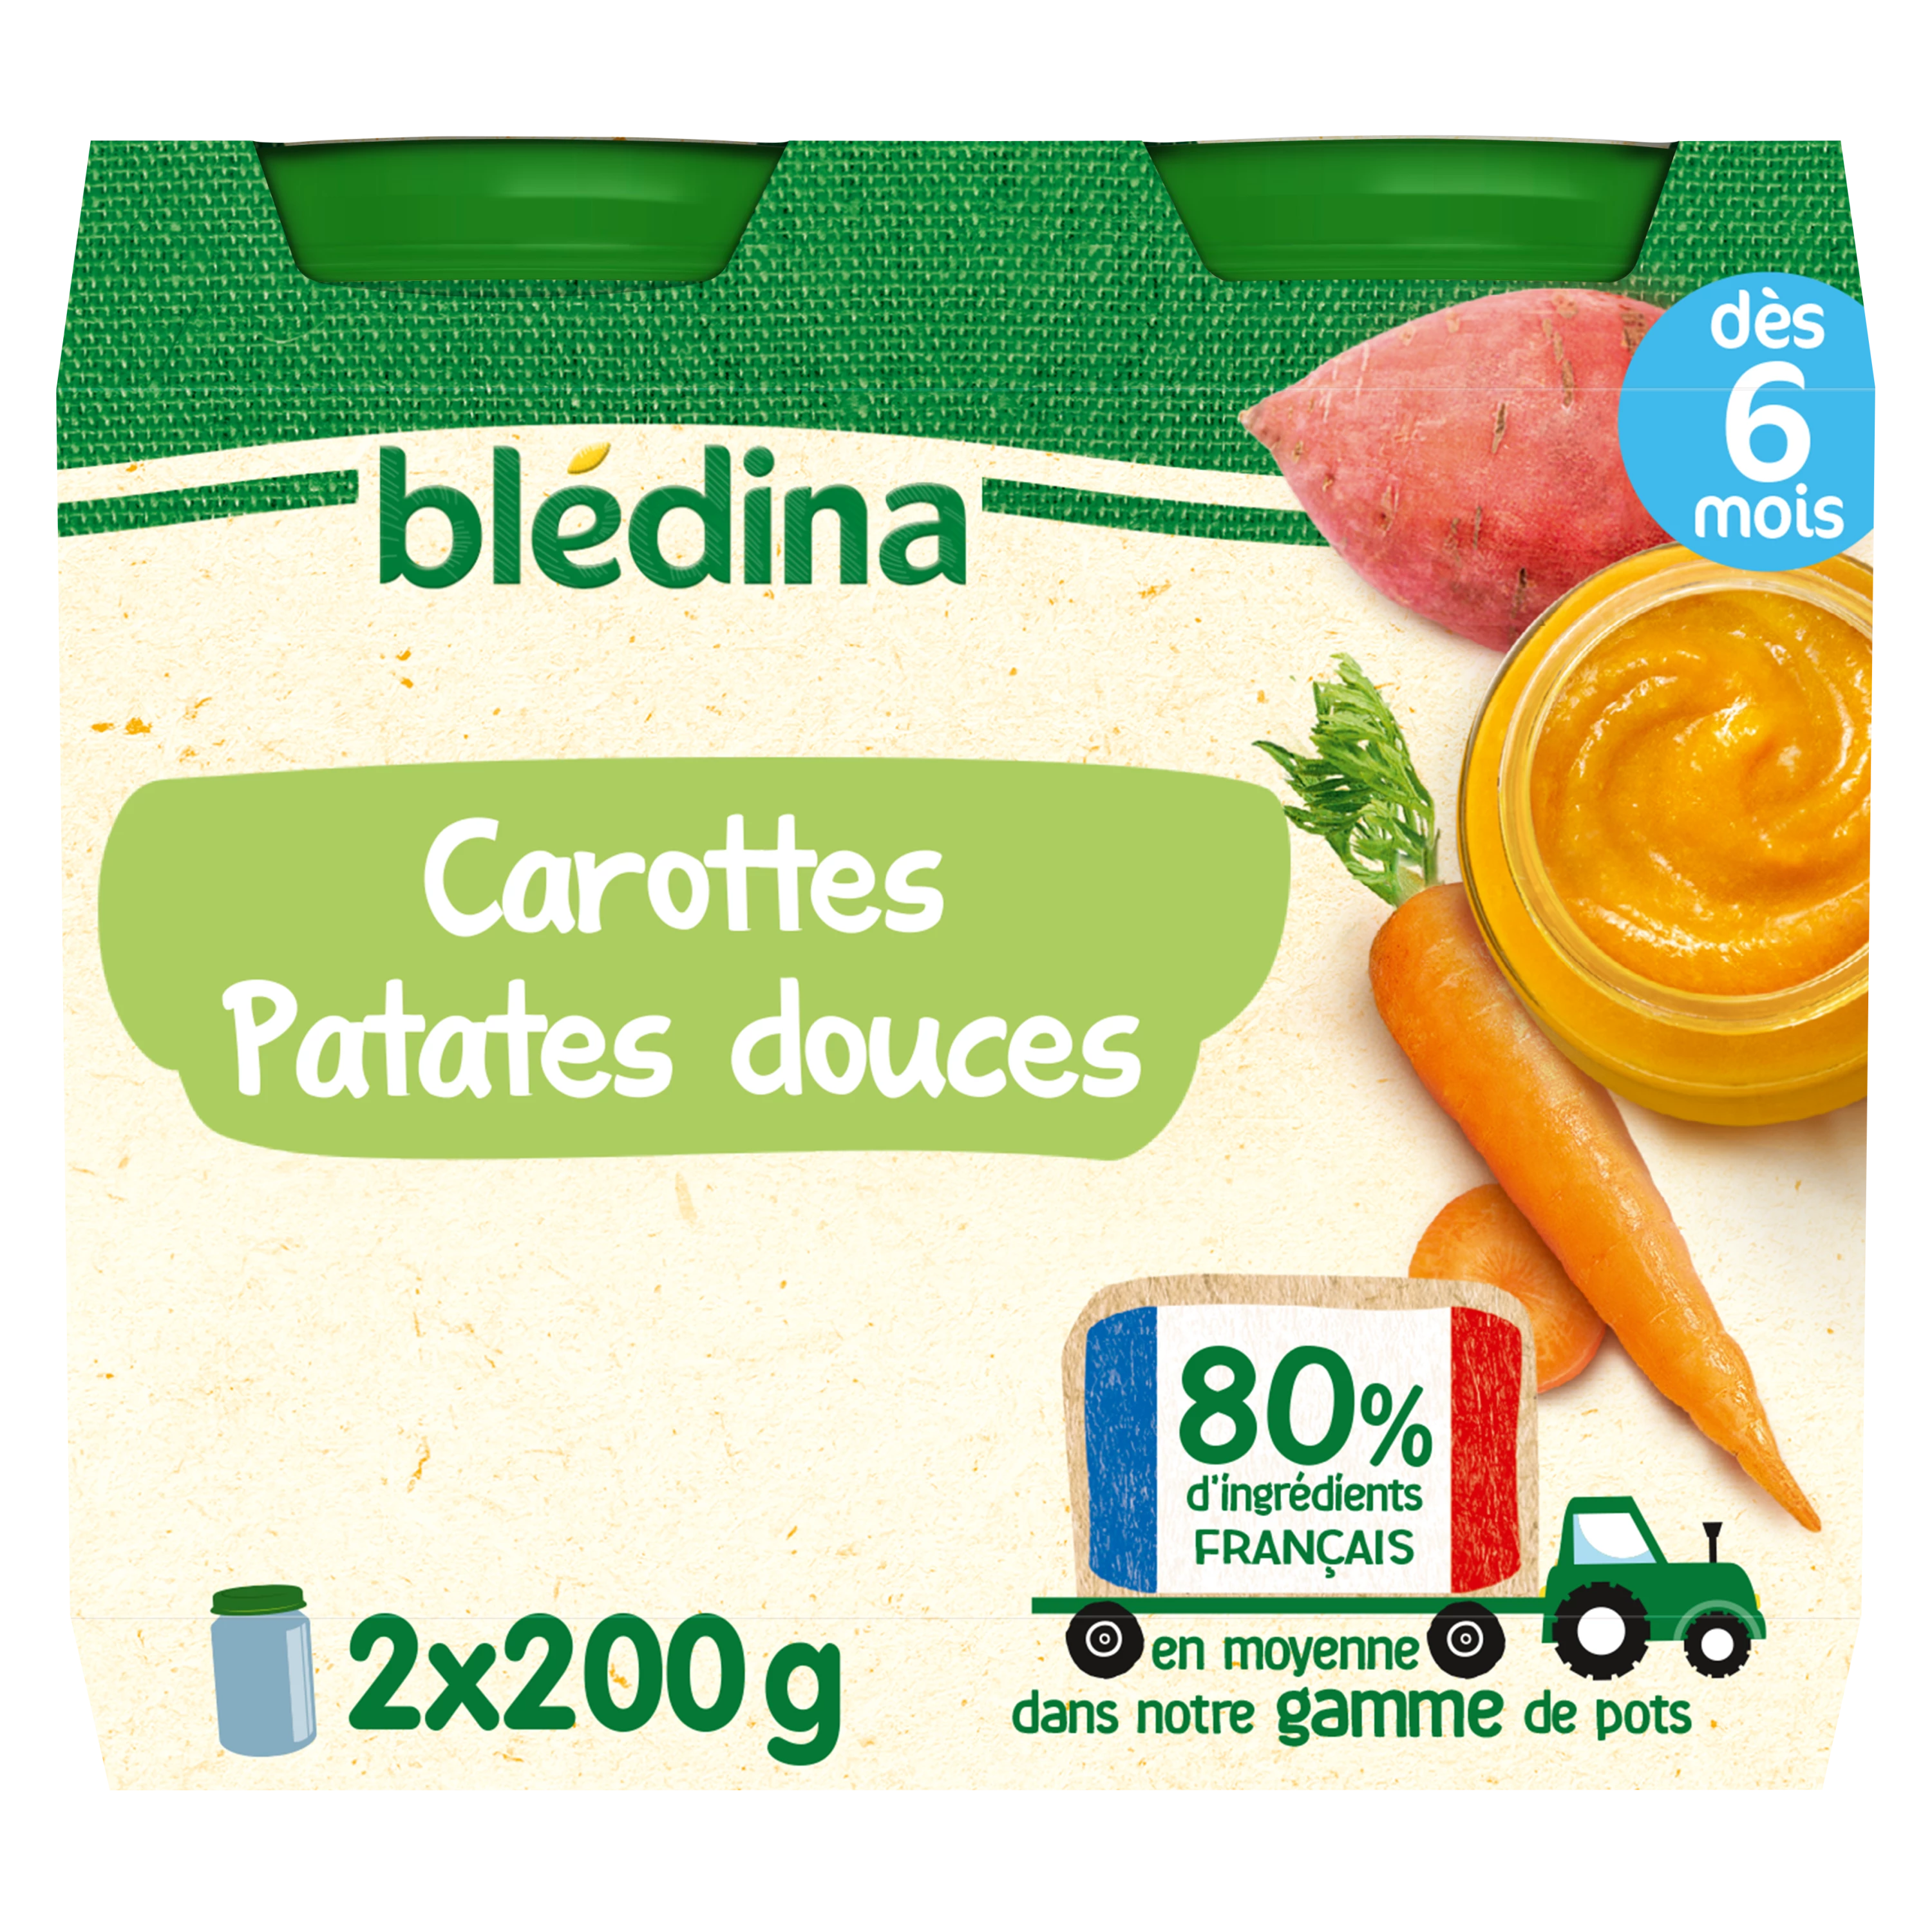 Klein babypotje vanaf 6 maanden wortelen zoete aardappelen 2x200g - BLEDINA